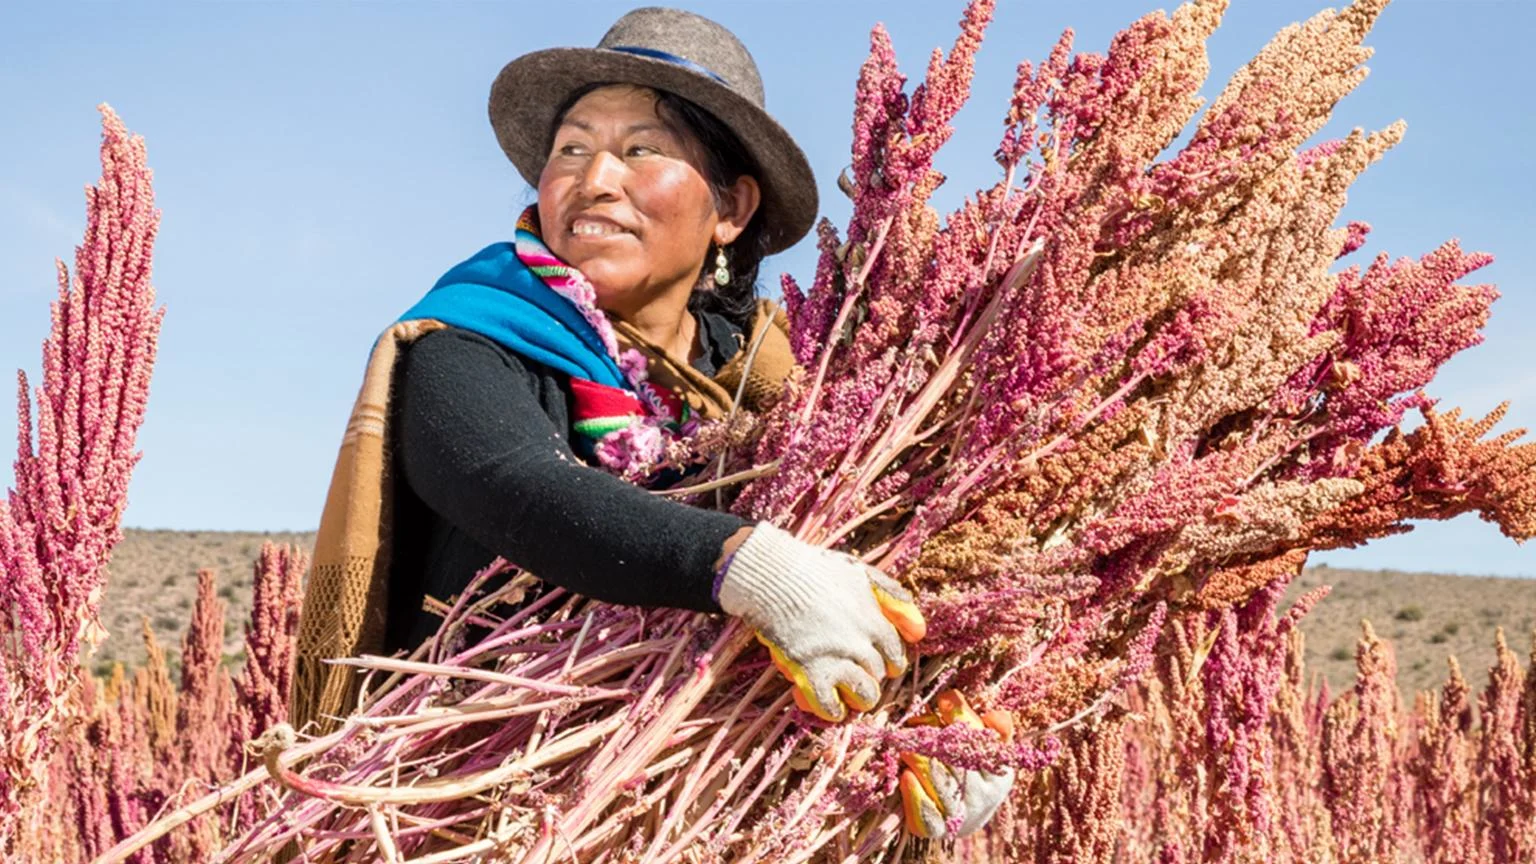 Eine Quinoa-Bäuerin hält ein grosses Bündel Quinoa in den Händen.